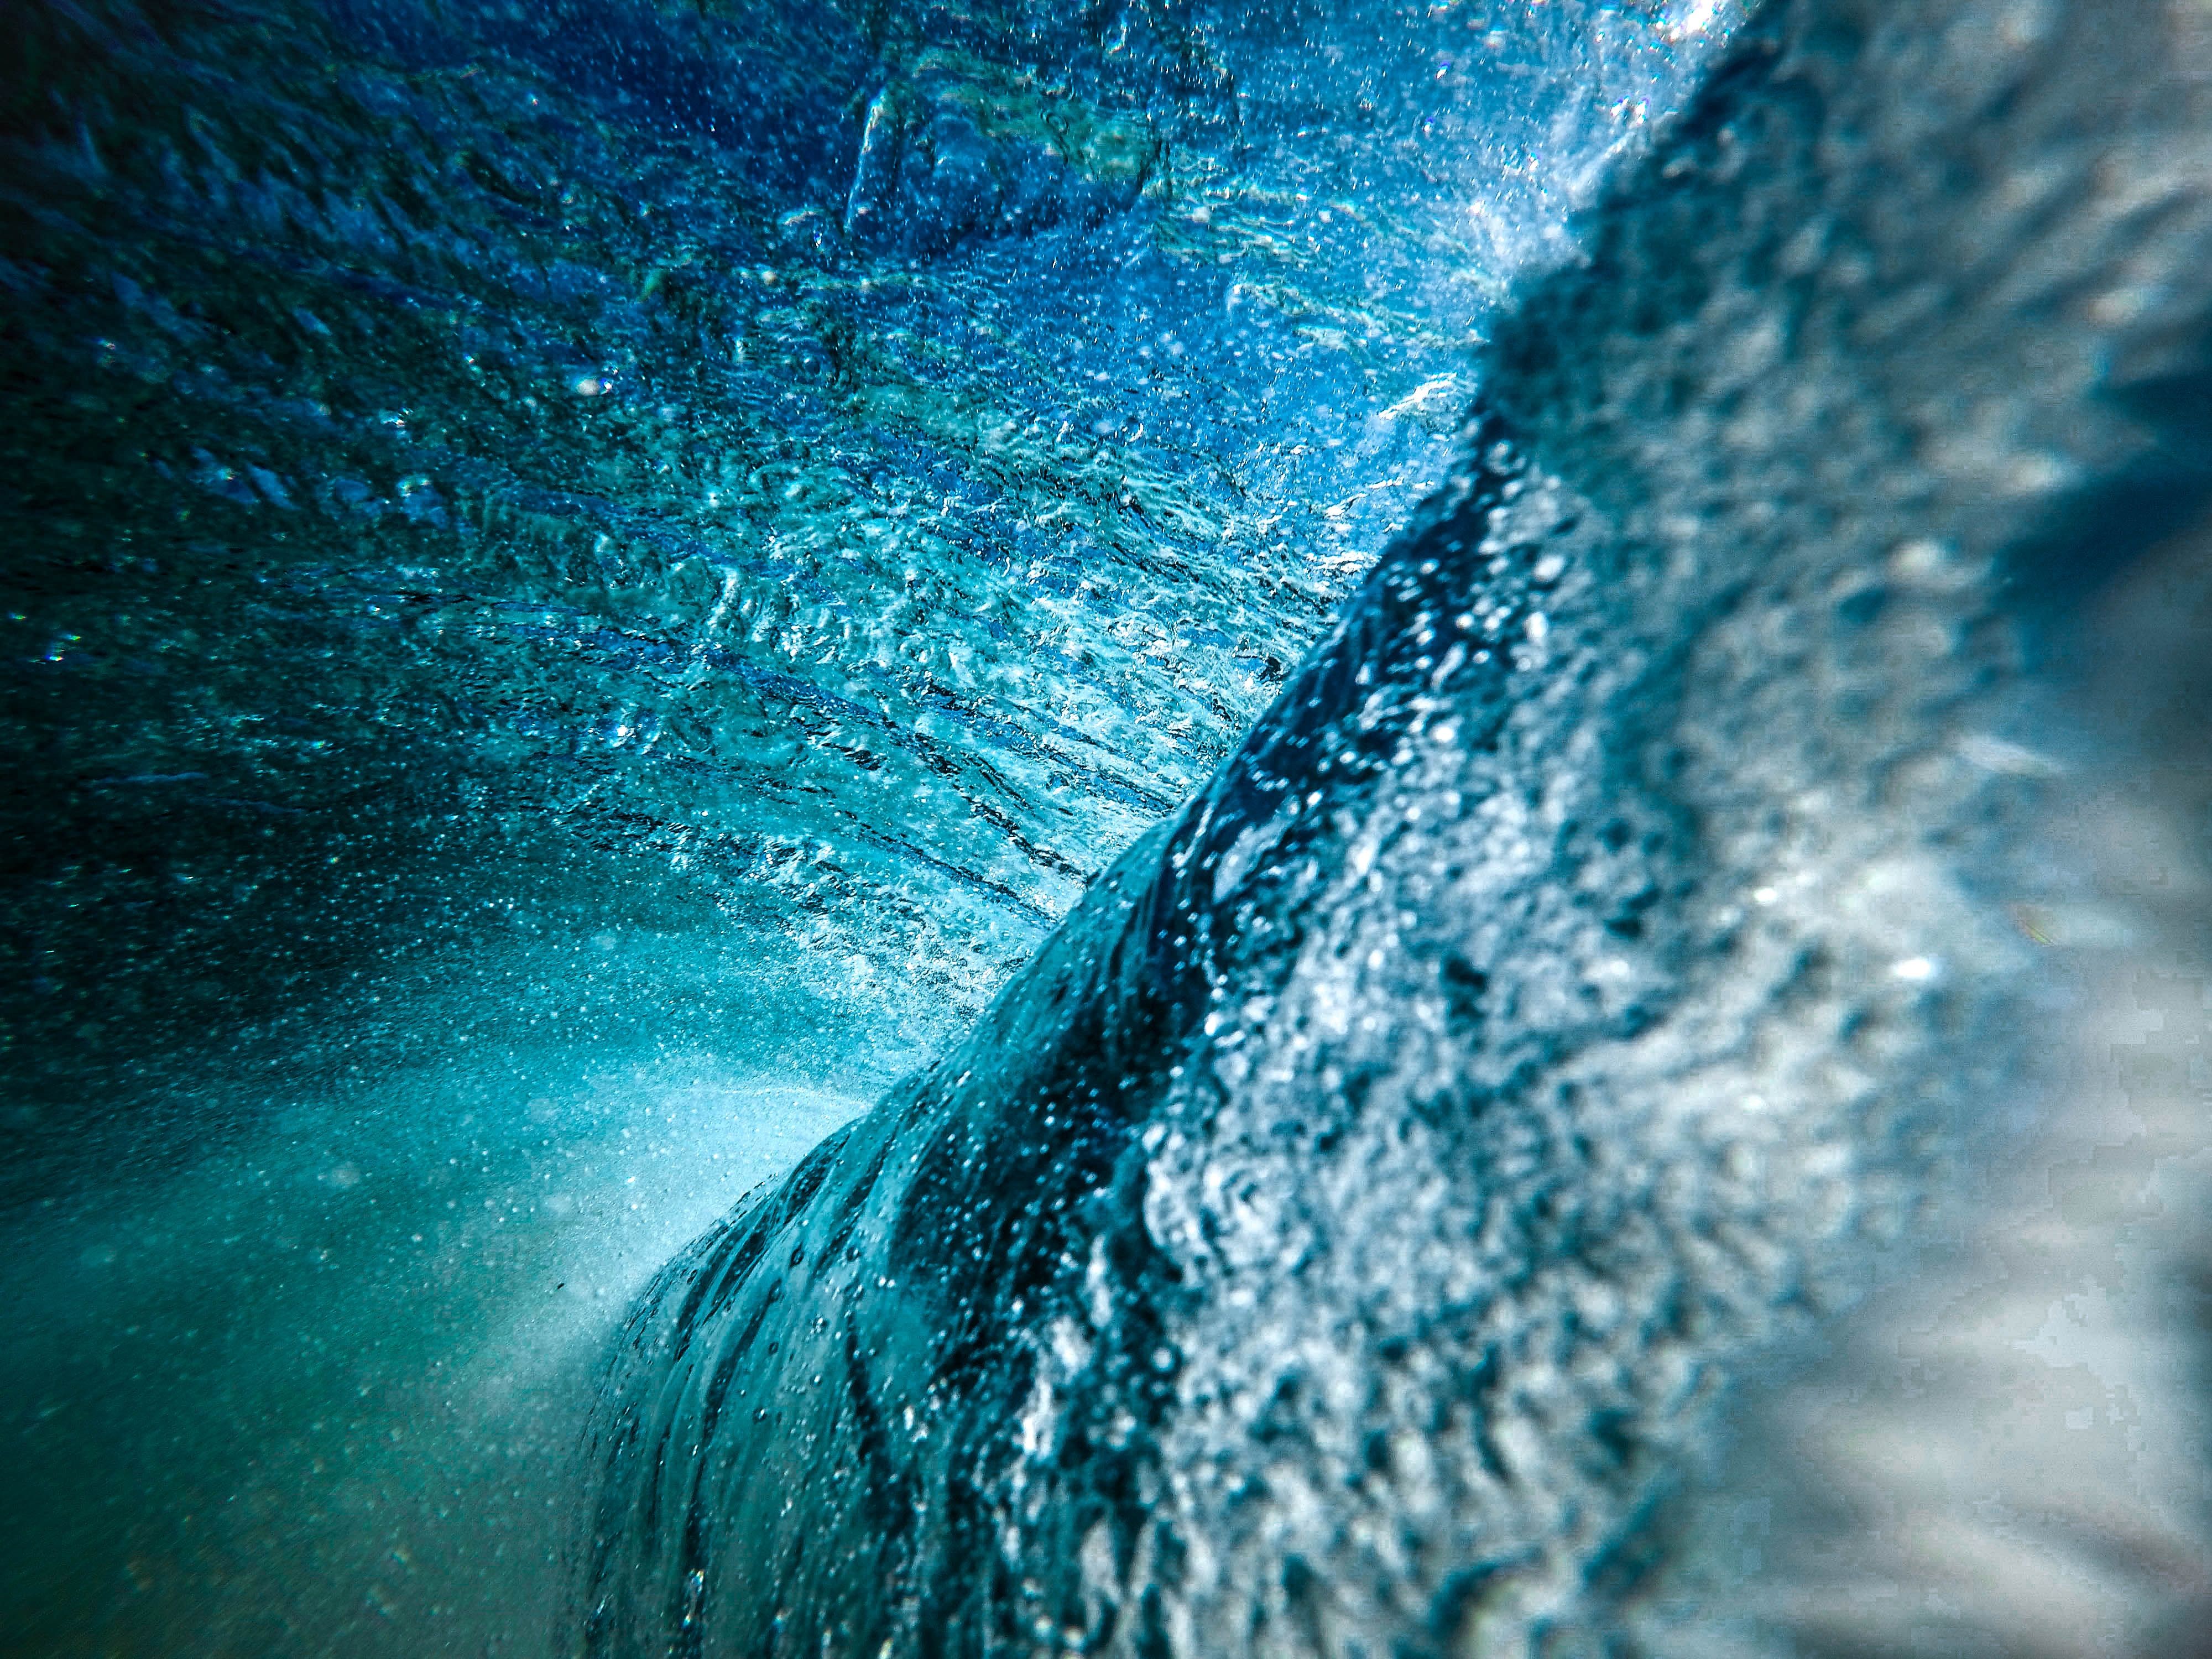 4000x3000 #wave, #hd background, #Free , #wallpaper, # wallpaper, #sea, #splash, #pretty background, #abstract, #hd wallpaper, #ripple, #water, #ocean, #amazing wallpaper, #wallpaper hd, #underwater, #blue, #bubble HD